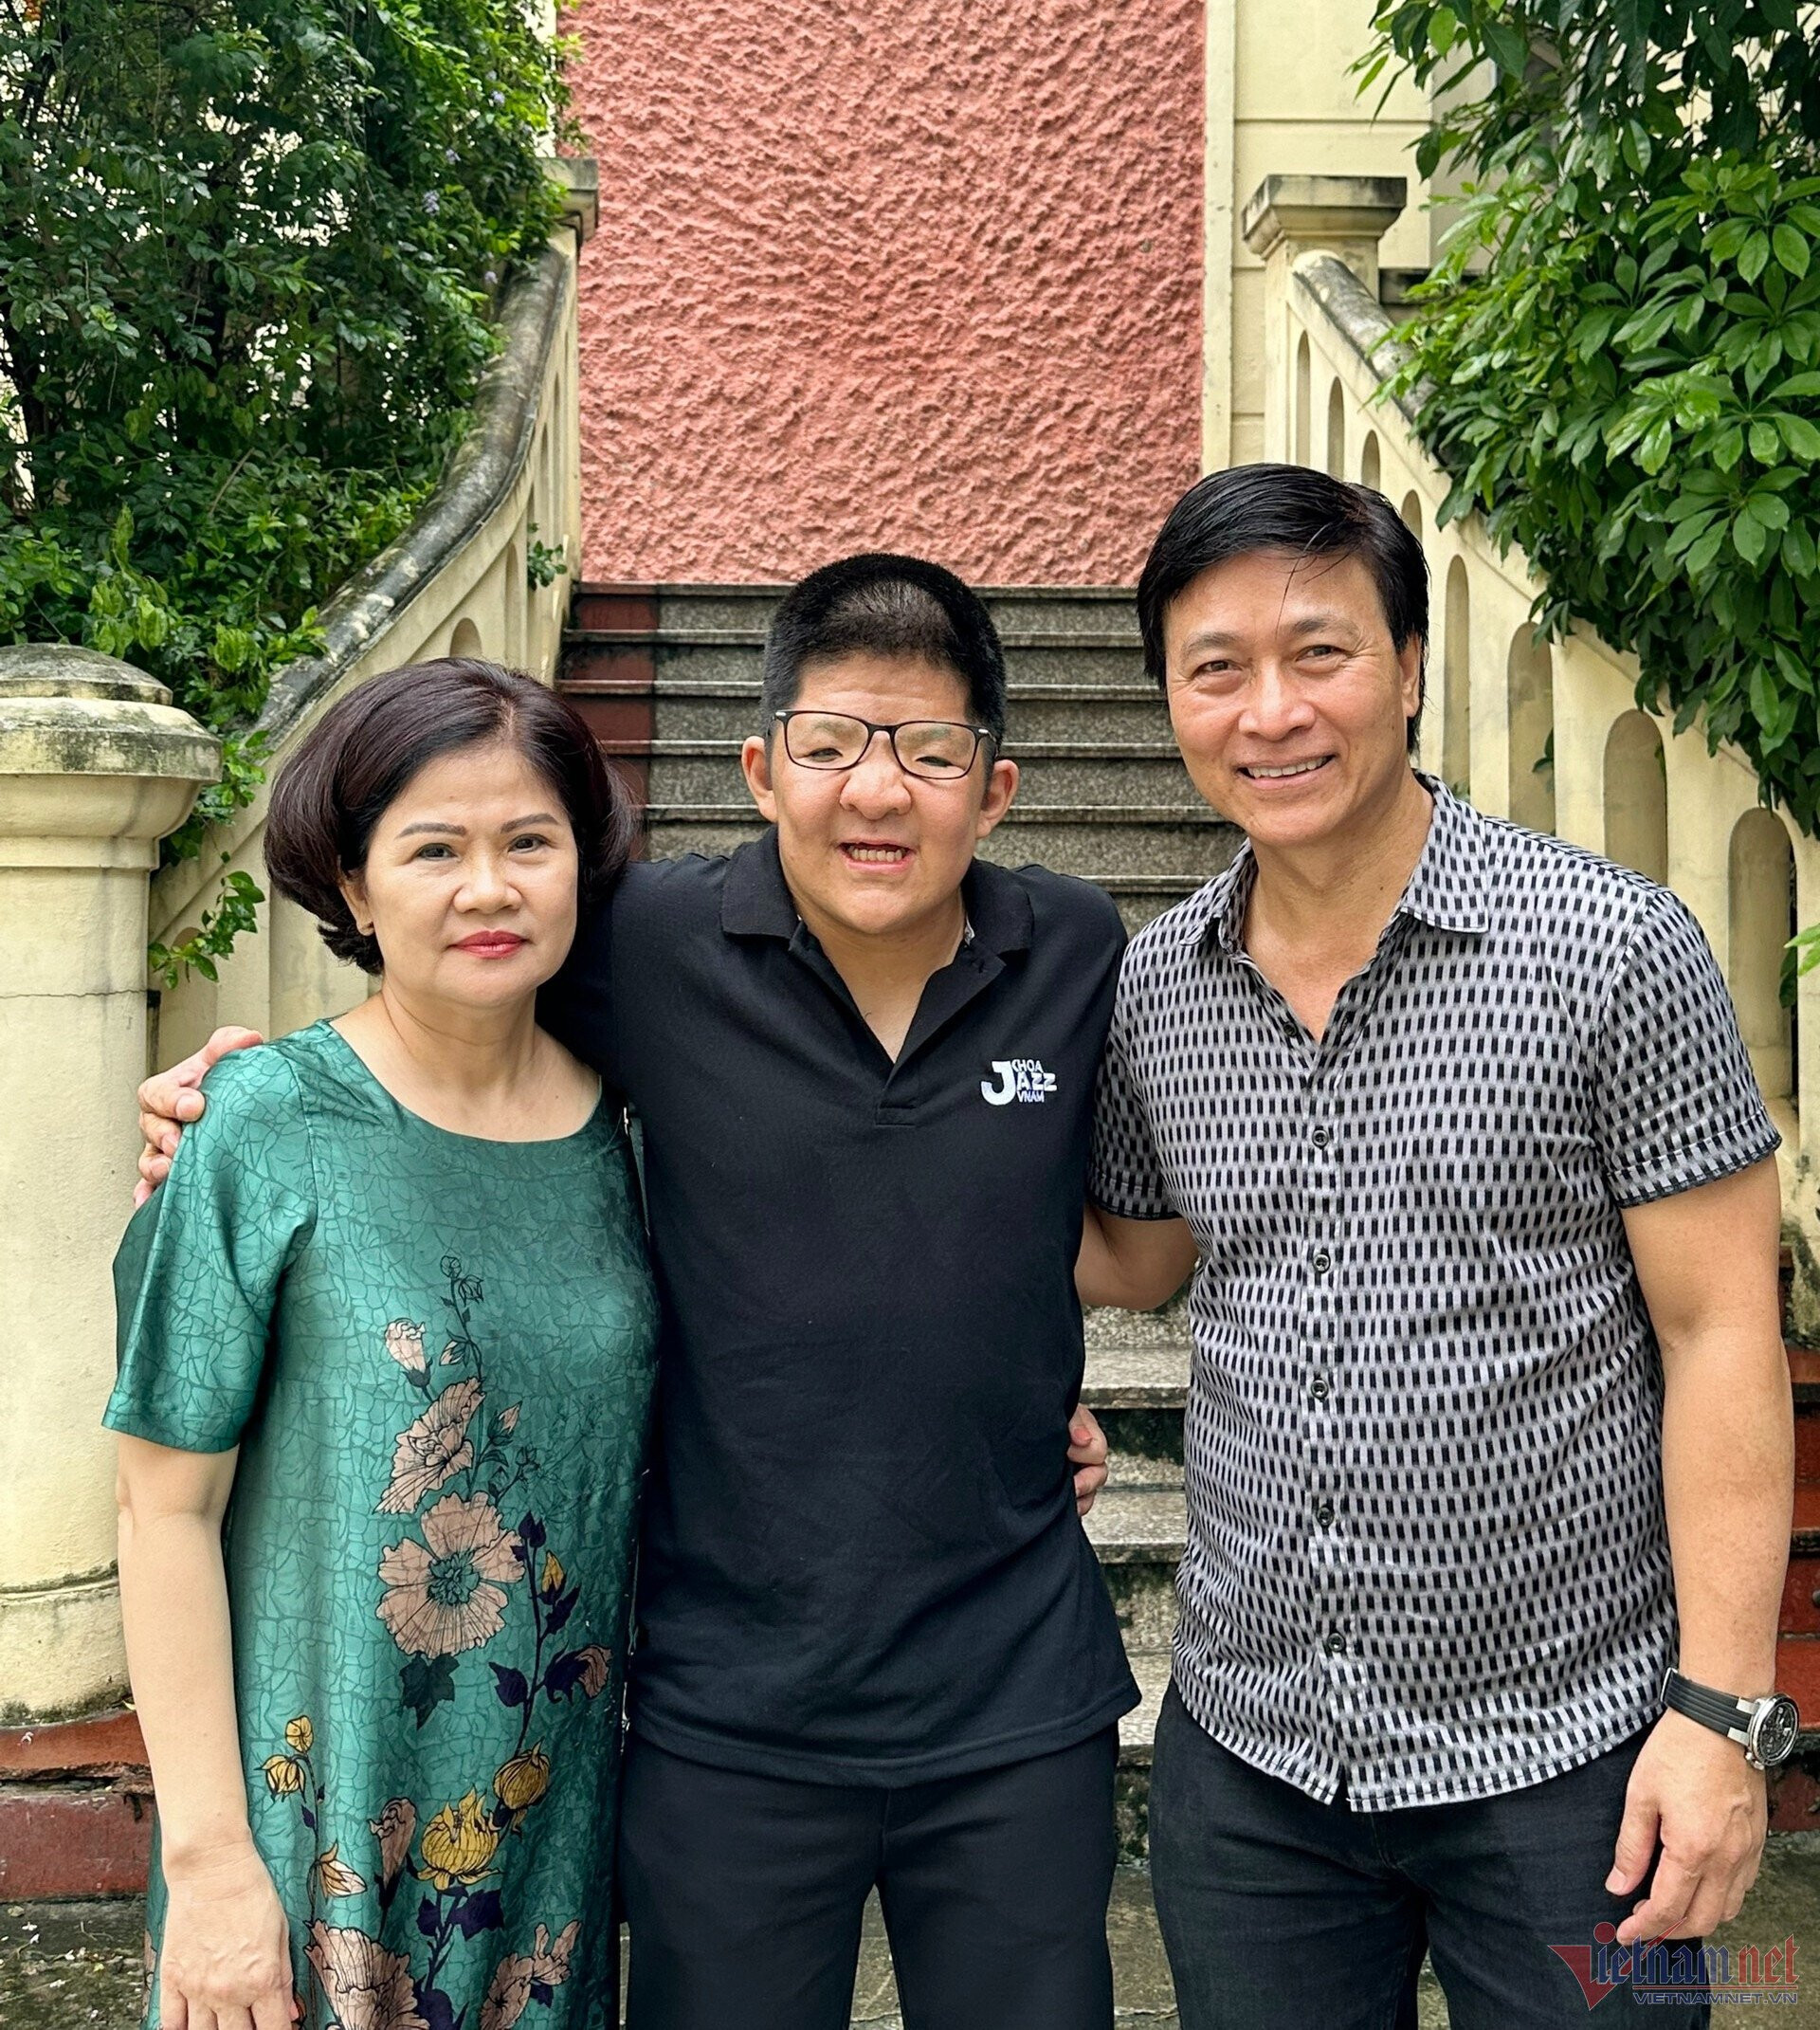 Nghệ sĩ Quốc Tuấn xúc động khi "bé Bôm" tốt nghiệp hệ trung cấp tại Học viện Âm nhạc Quốc gia Việt Nam: "Sau này, khi tôi không còn, Bôm vẫn có 1 nghề nghiệp để sống được"- Ảnh 5.